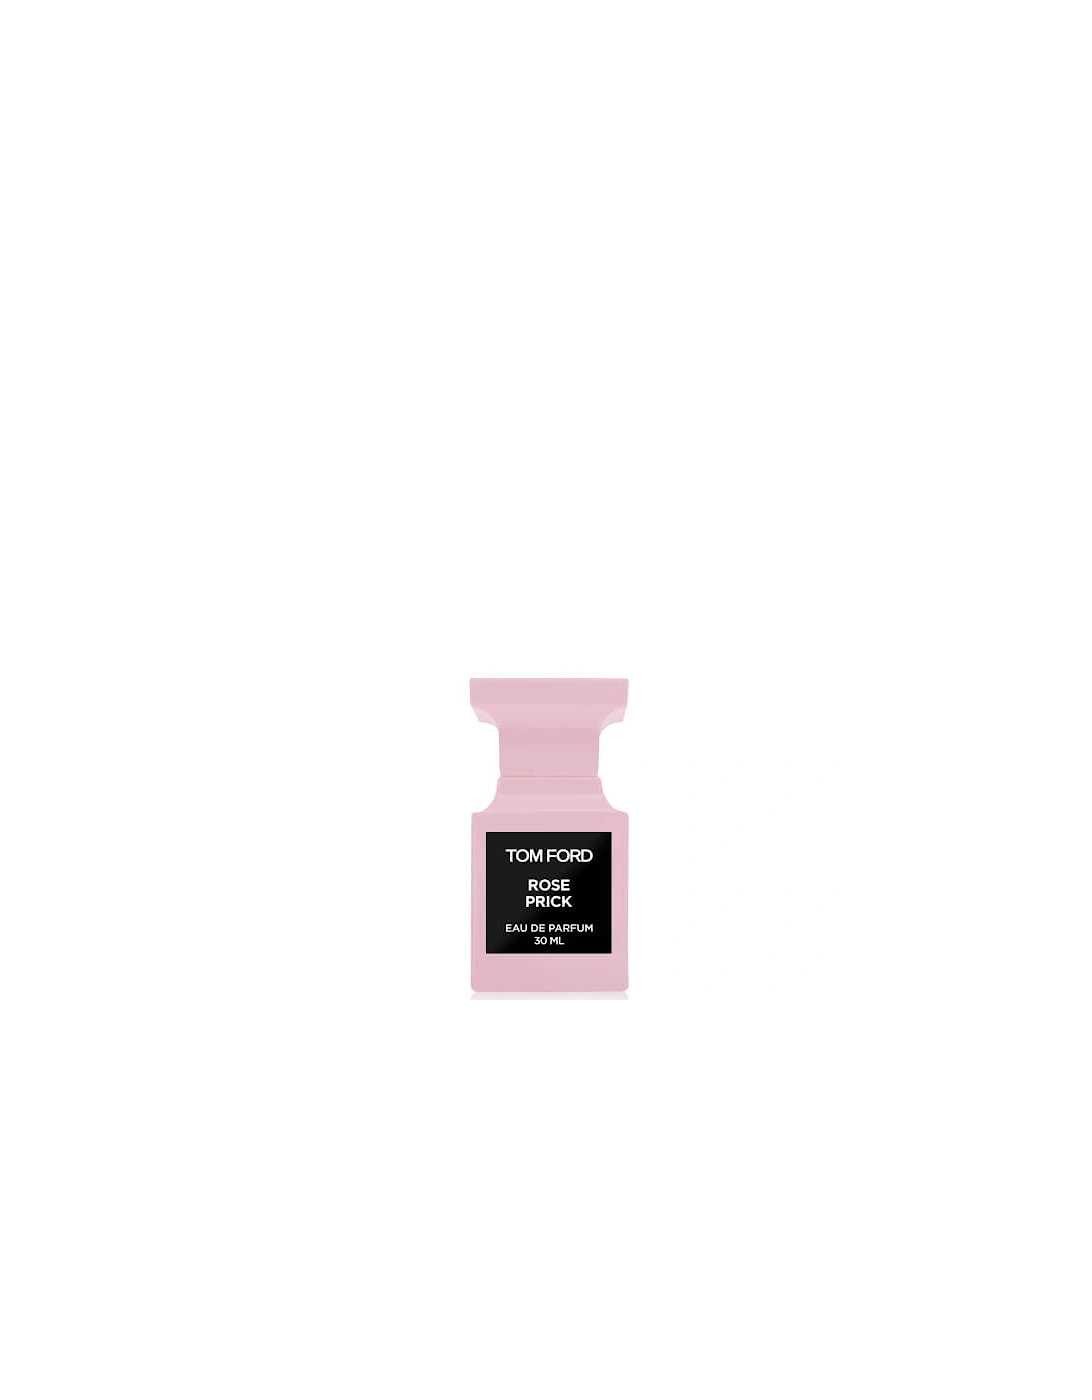 Rose Prick Eau de Parfum Spray 30ml, 2 of 1